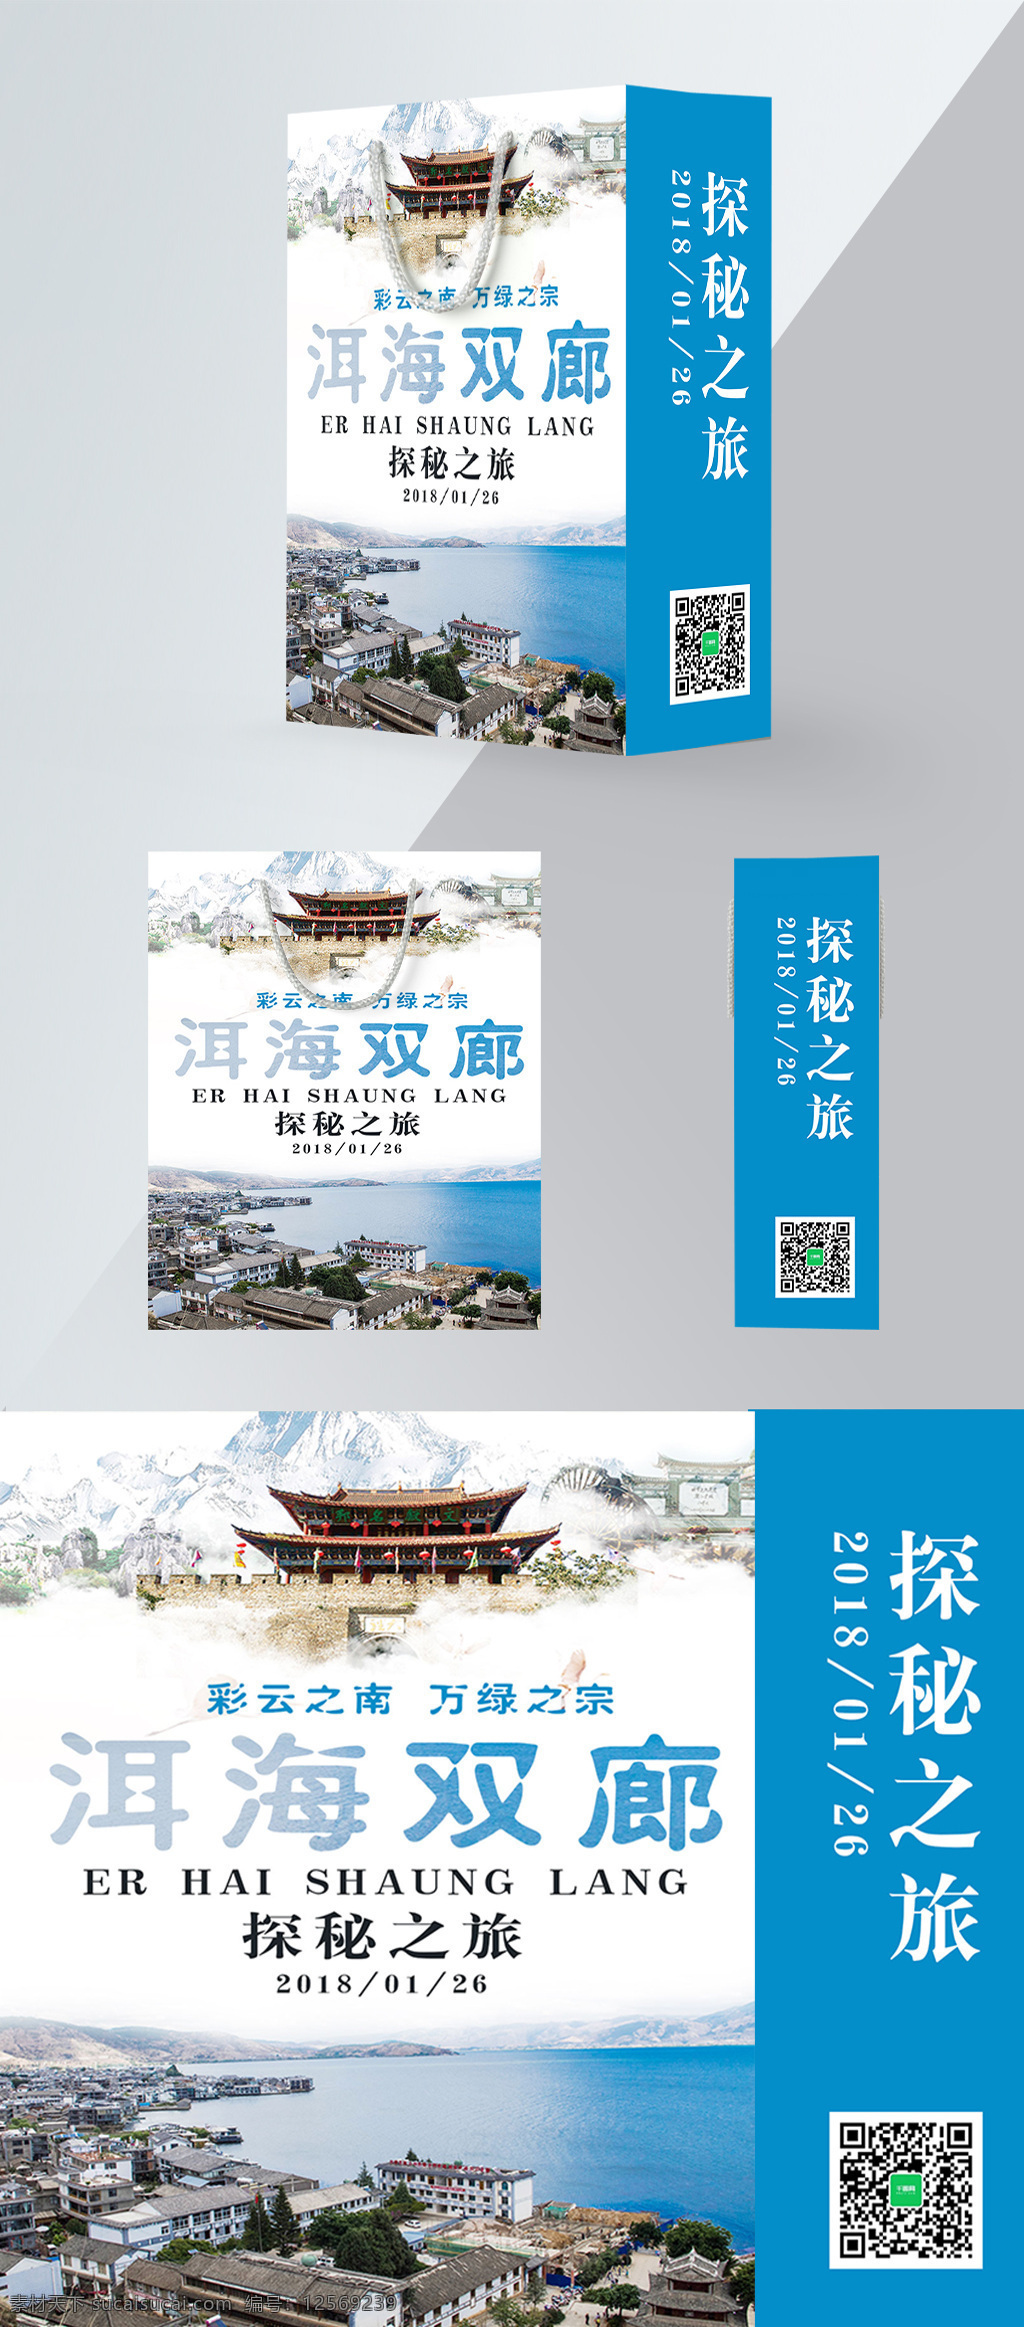 精品 手提袋 洱海 旅行 包装设计 北京 大理 大约在冬季 冬季旅游 冬天 精品手提袋 旅游 温泉度假村 雪景